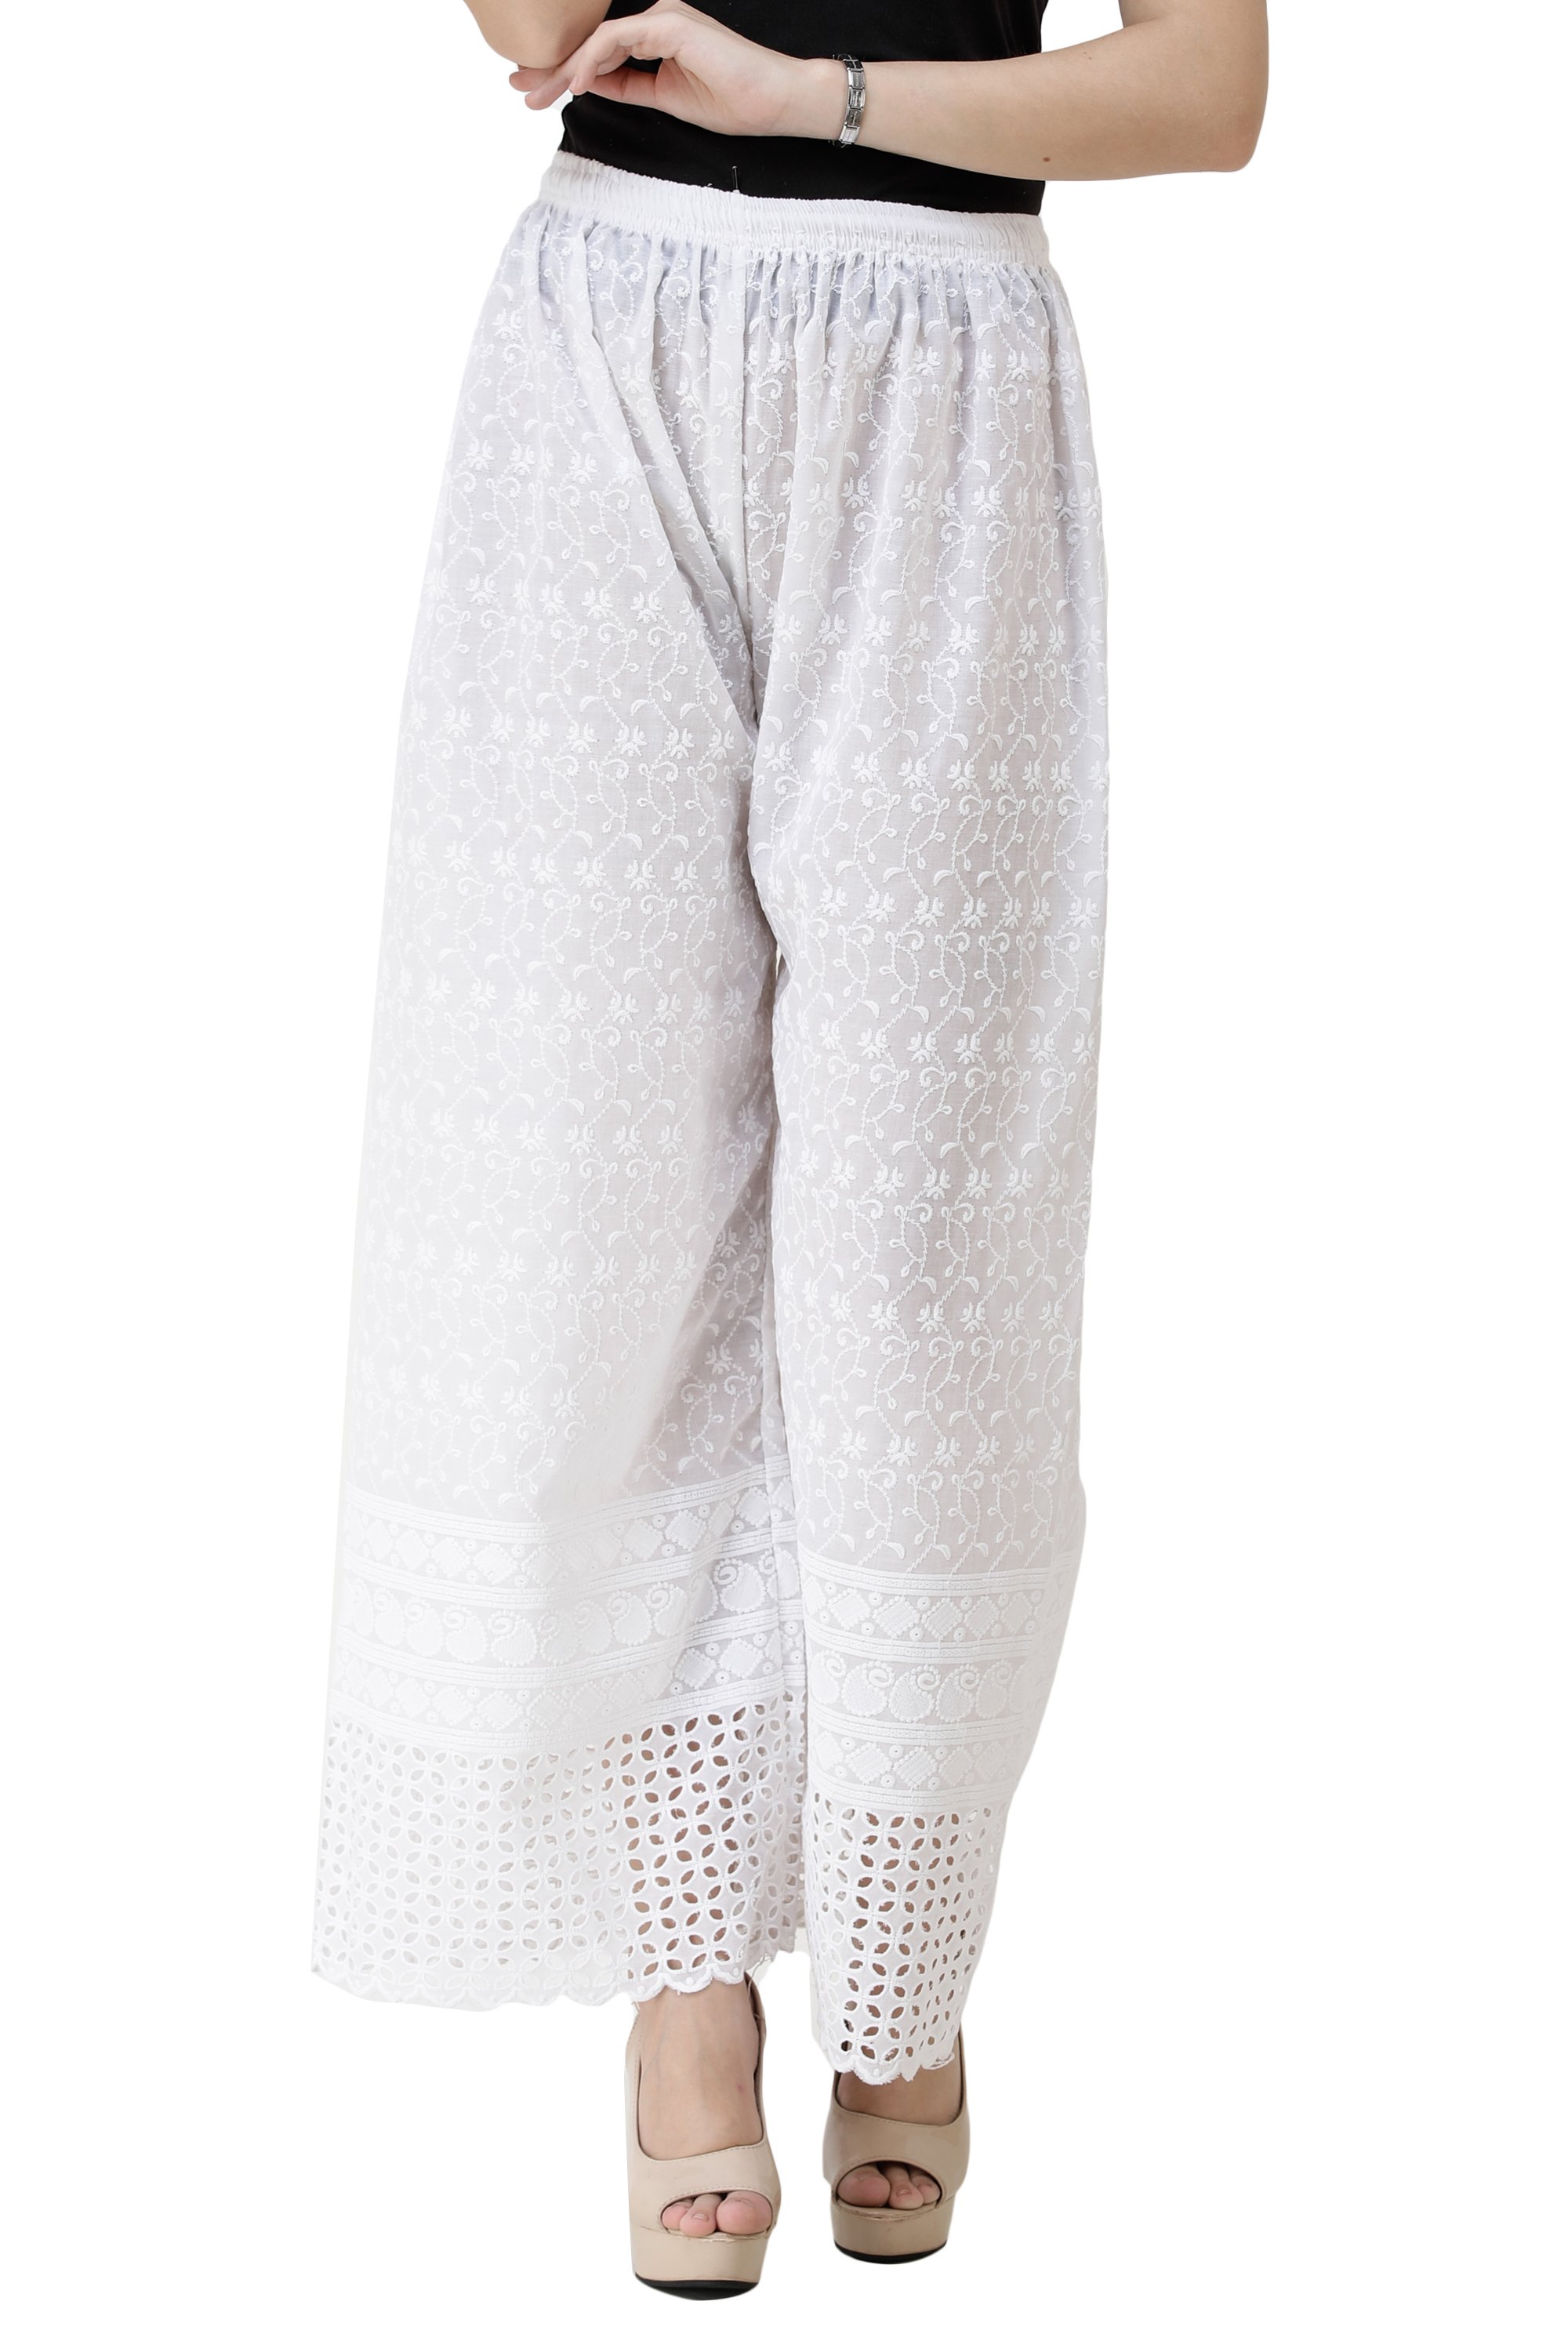 Buy QOMN White Cotton Cropped Palazzos for Women Online  Tata CLiQ